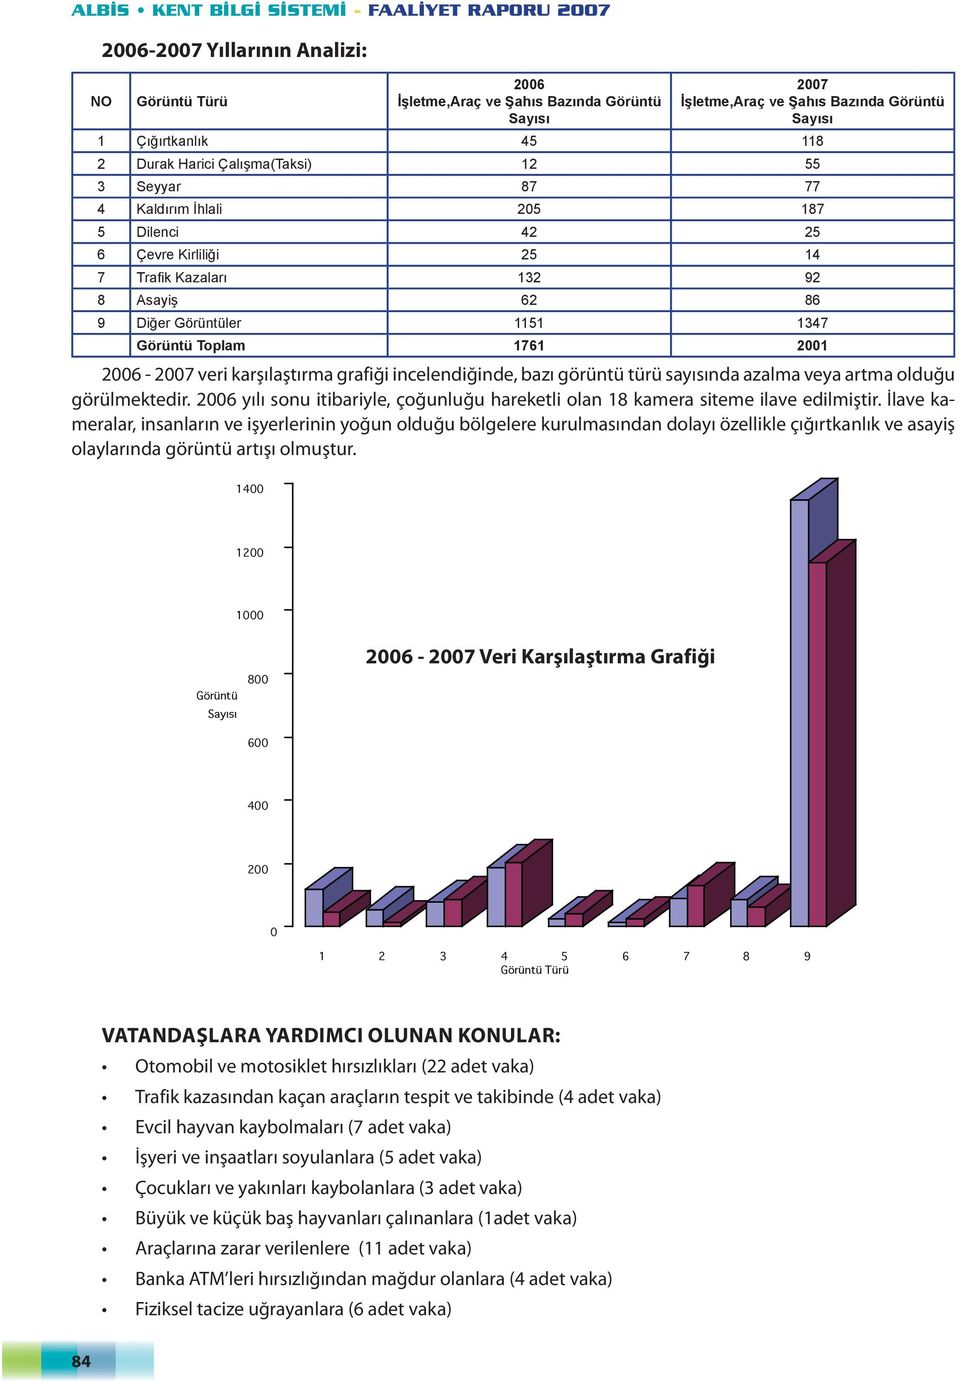 2001 2006-2007 Veri Karşılaştırma Grafiği 2006-2007 veri karşılaştırma grafiği incelendiğinde, bazı görüntü türü sayısında azalma veya artma olduğu görülmektedir.